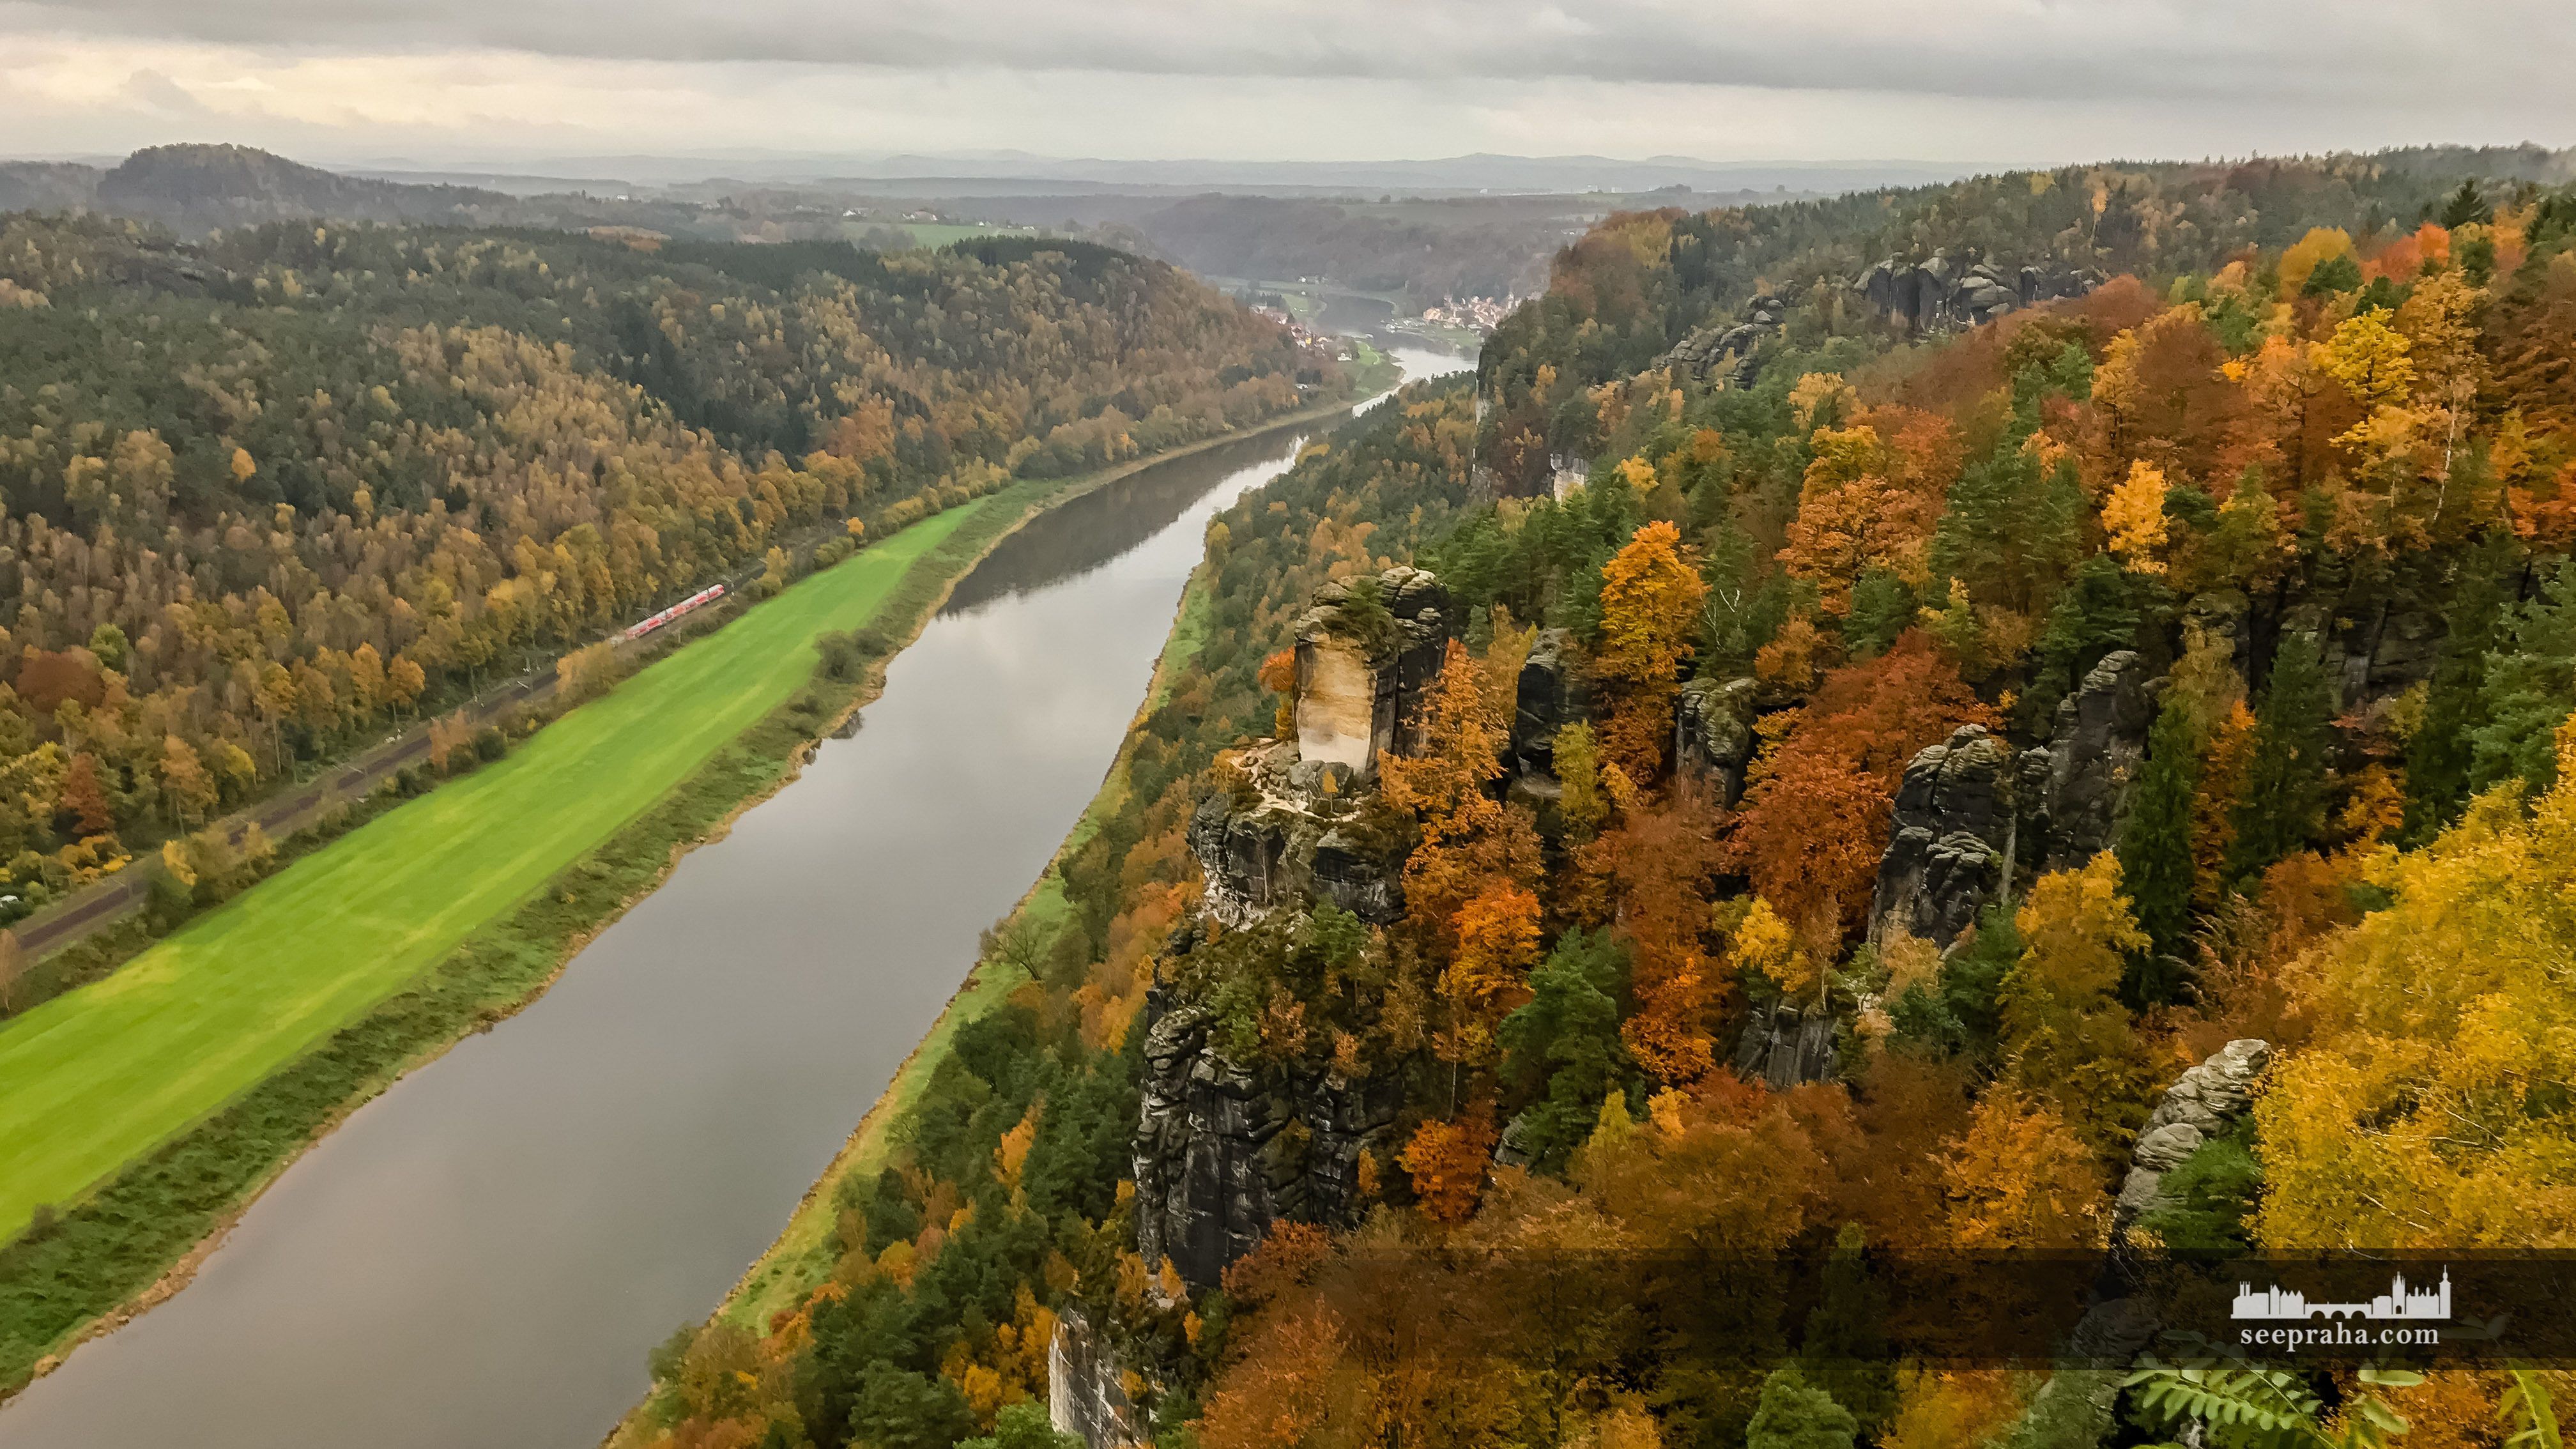 Výhled z Bastei na řeku Elba, Národní park Saské Švýcarsko, Německo